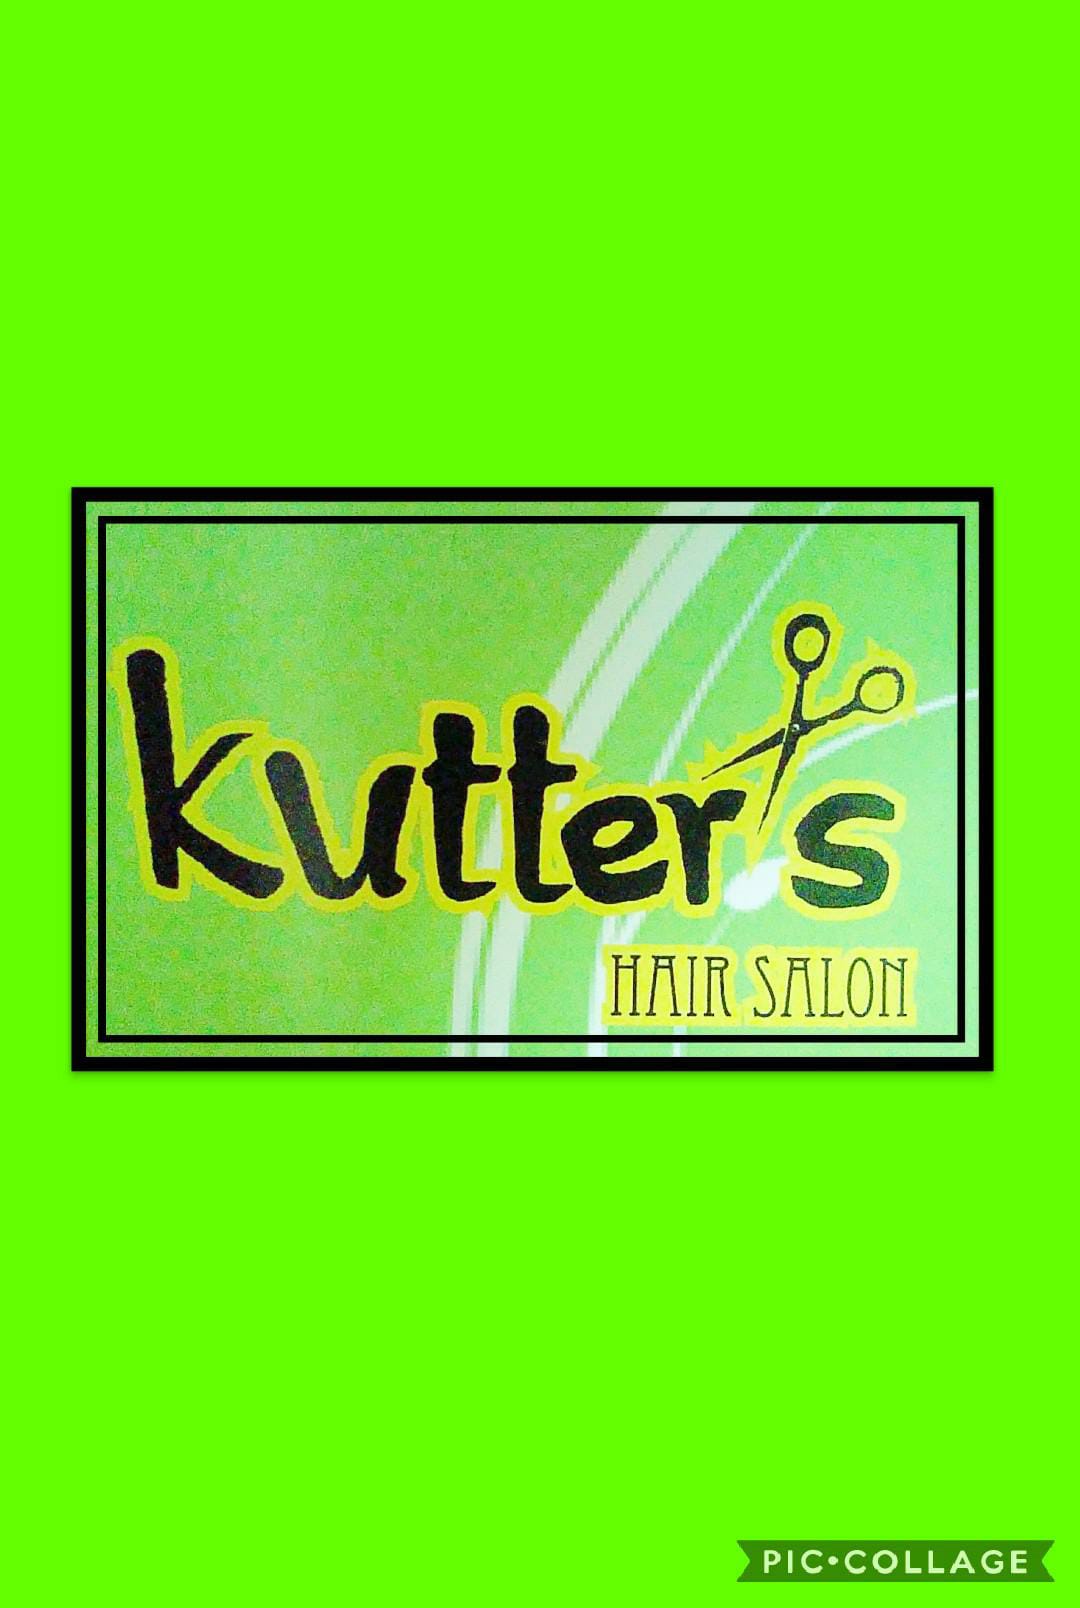 Kutter's Hair Salon